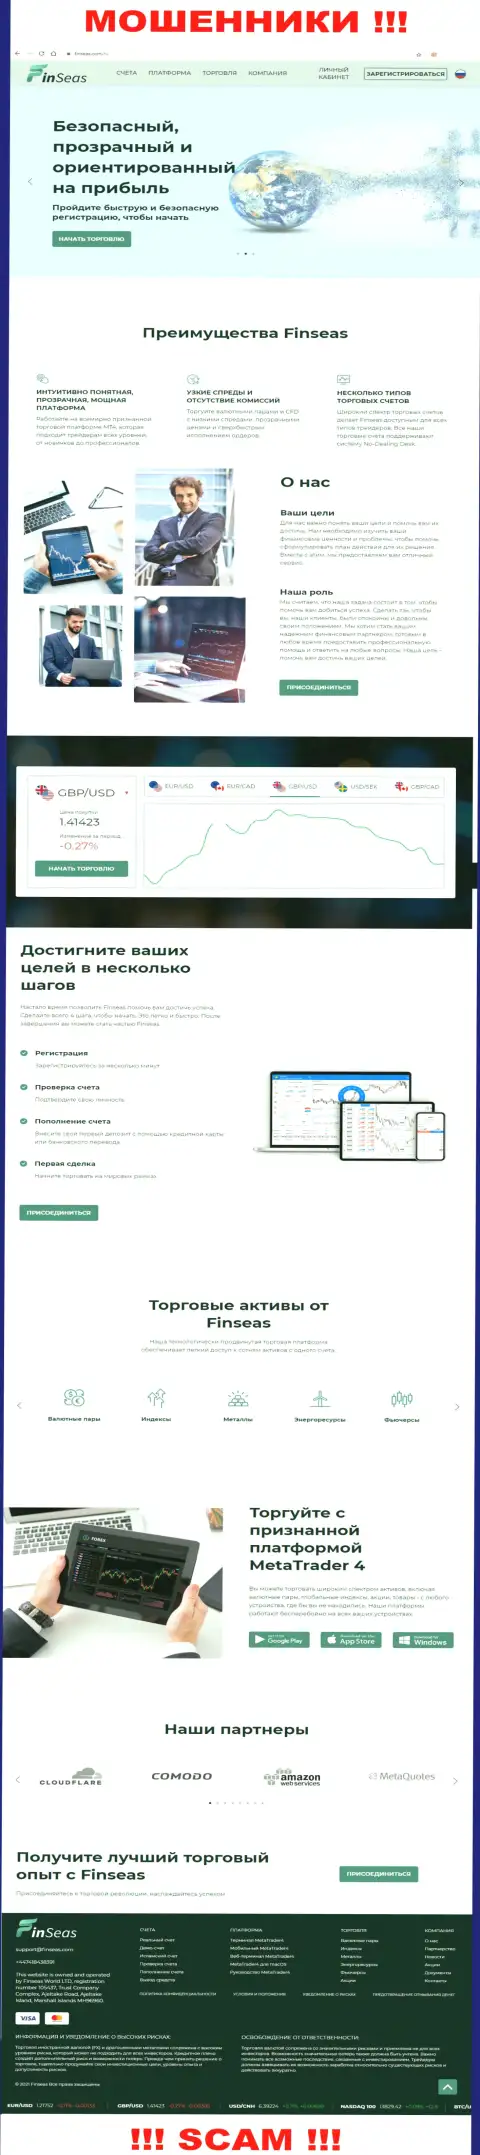 Веб-портал компании ФинСиас Волд Лтд, заполненный липовой инфой